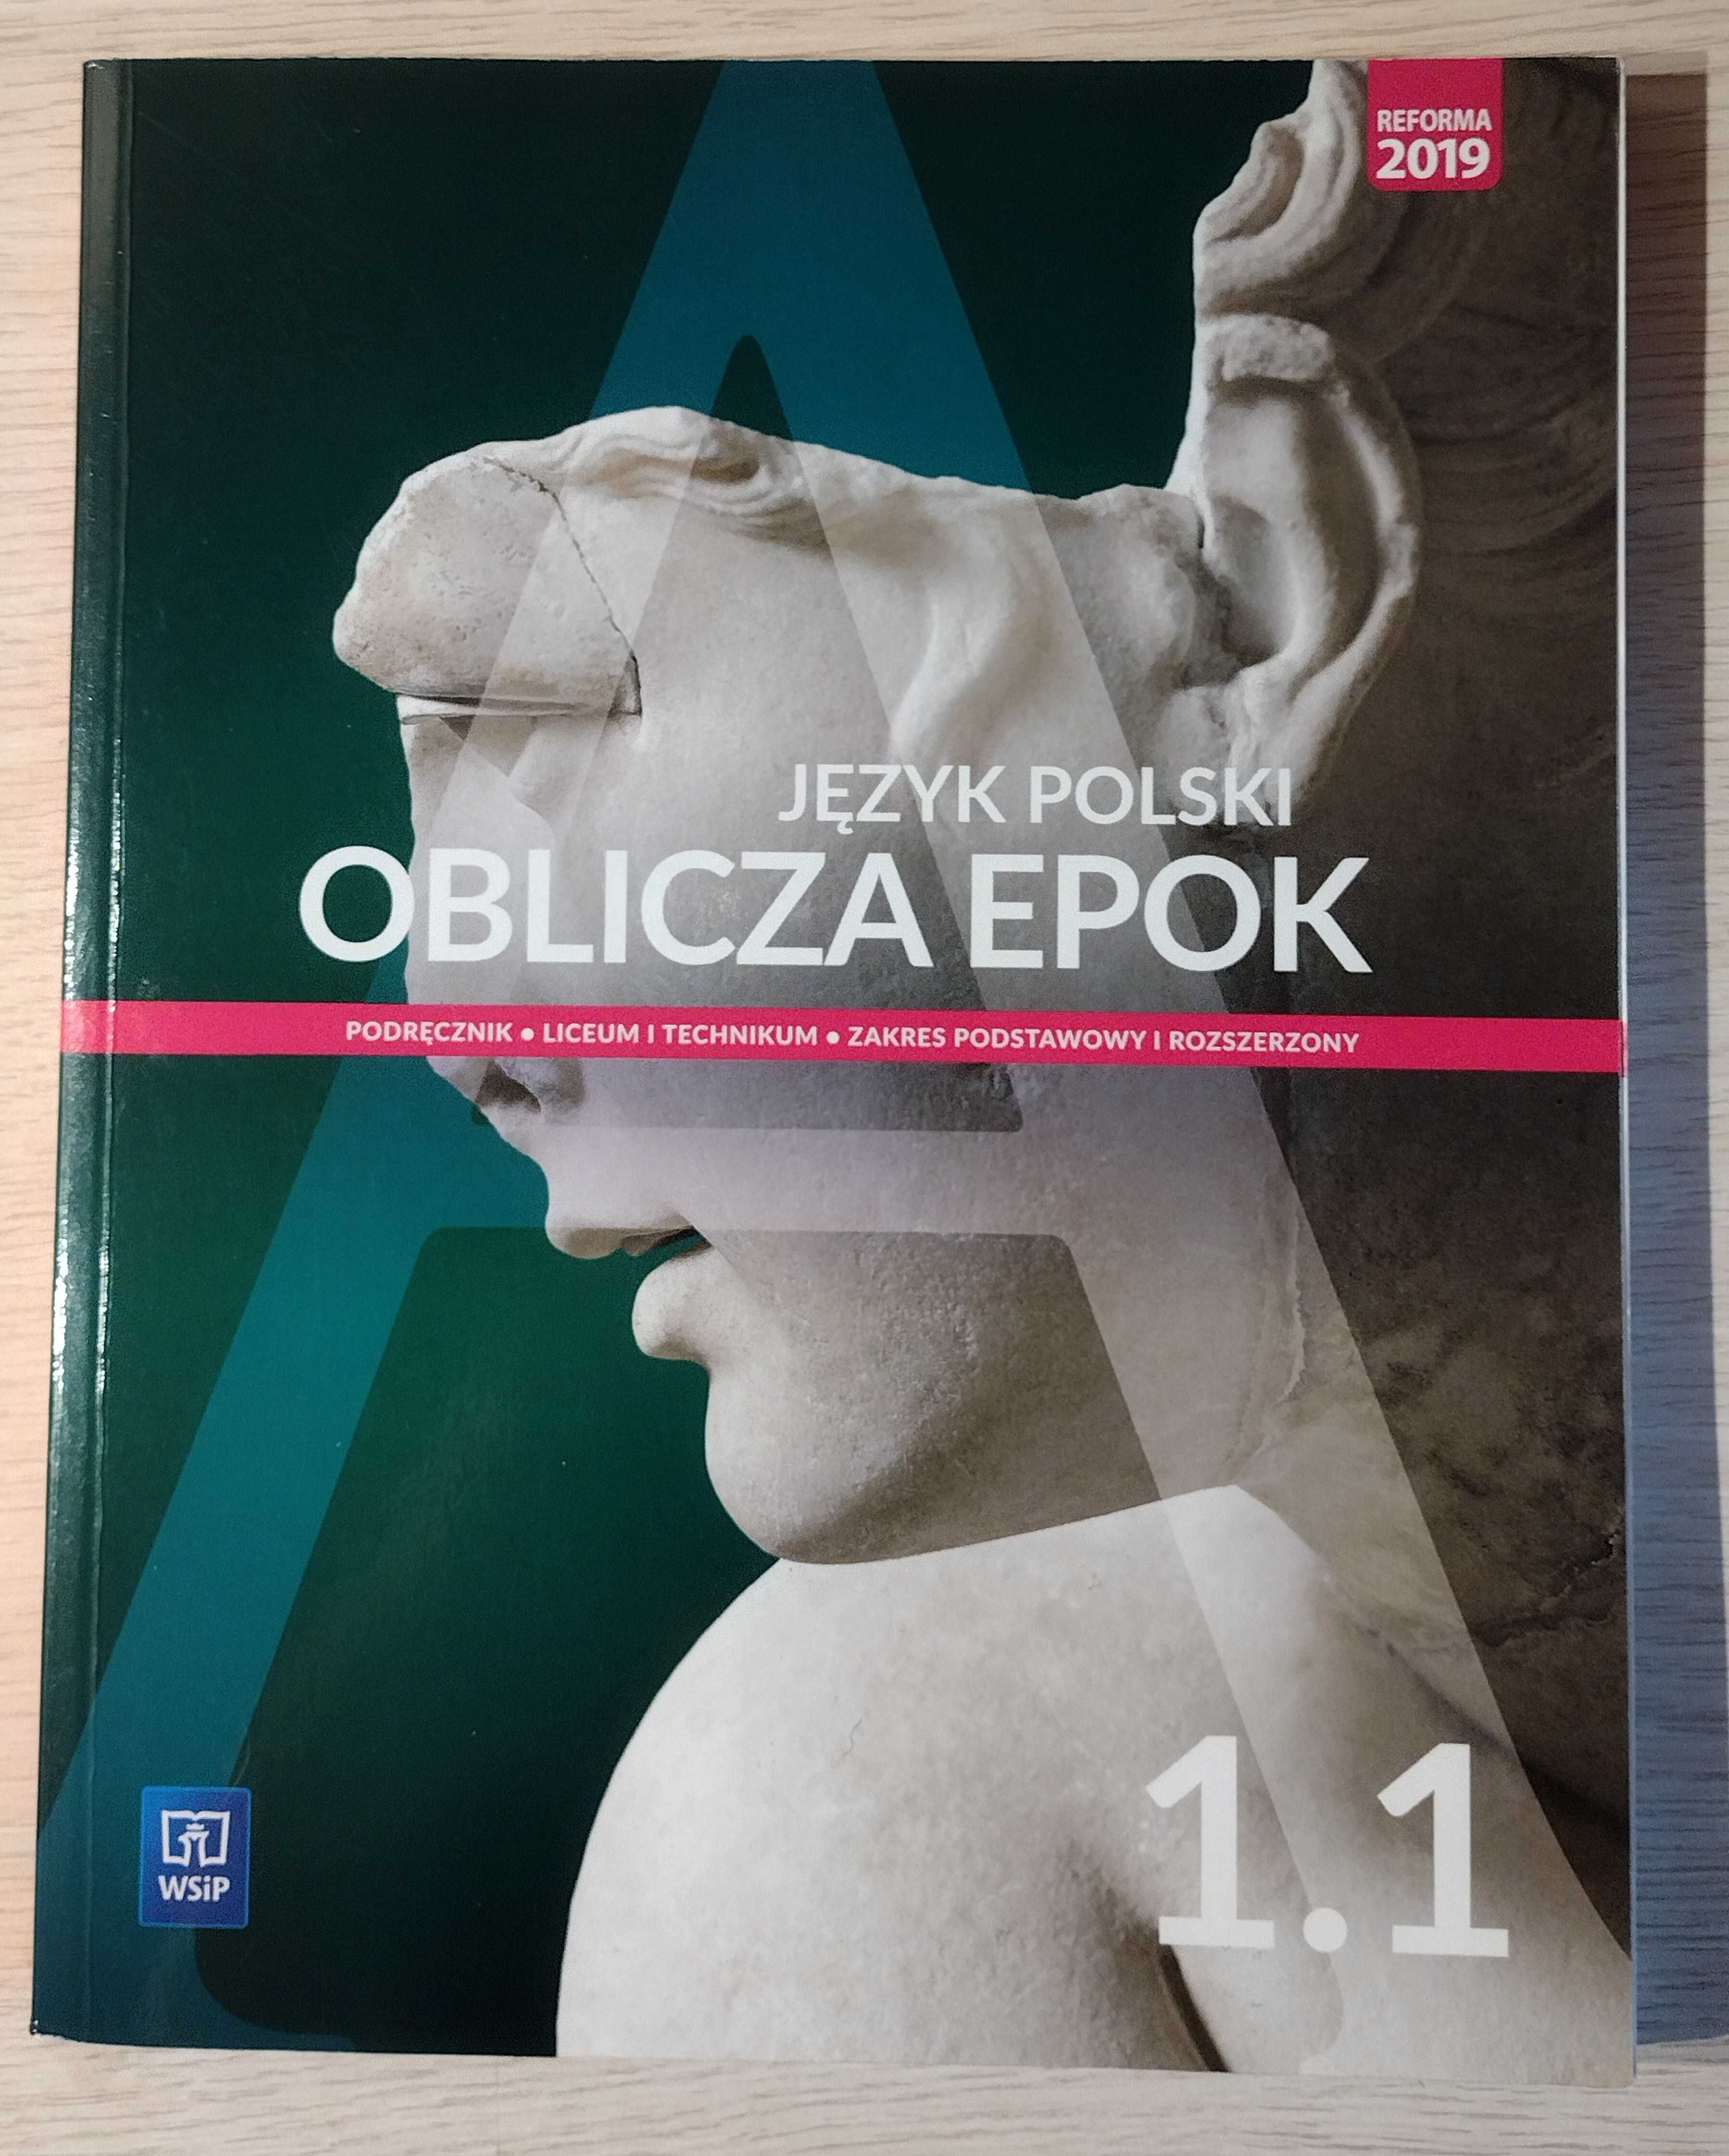 Podręcznik do języka polskiego ,,Oblicza epok 1.1" zakres podstawowy